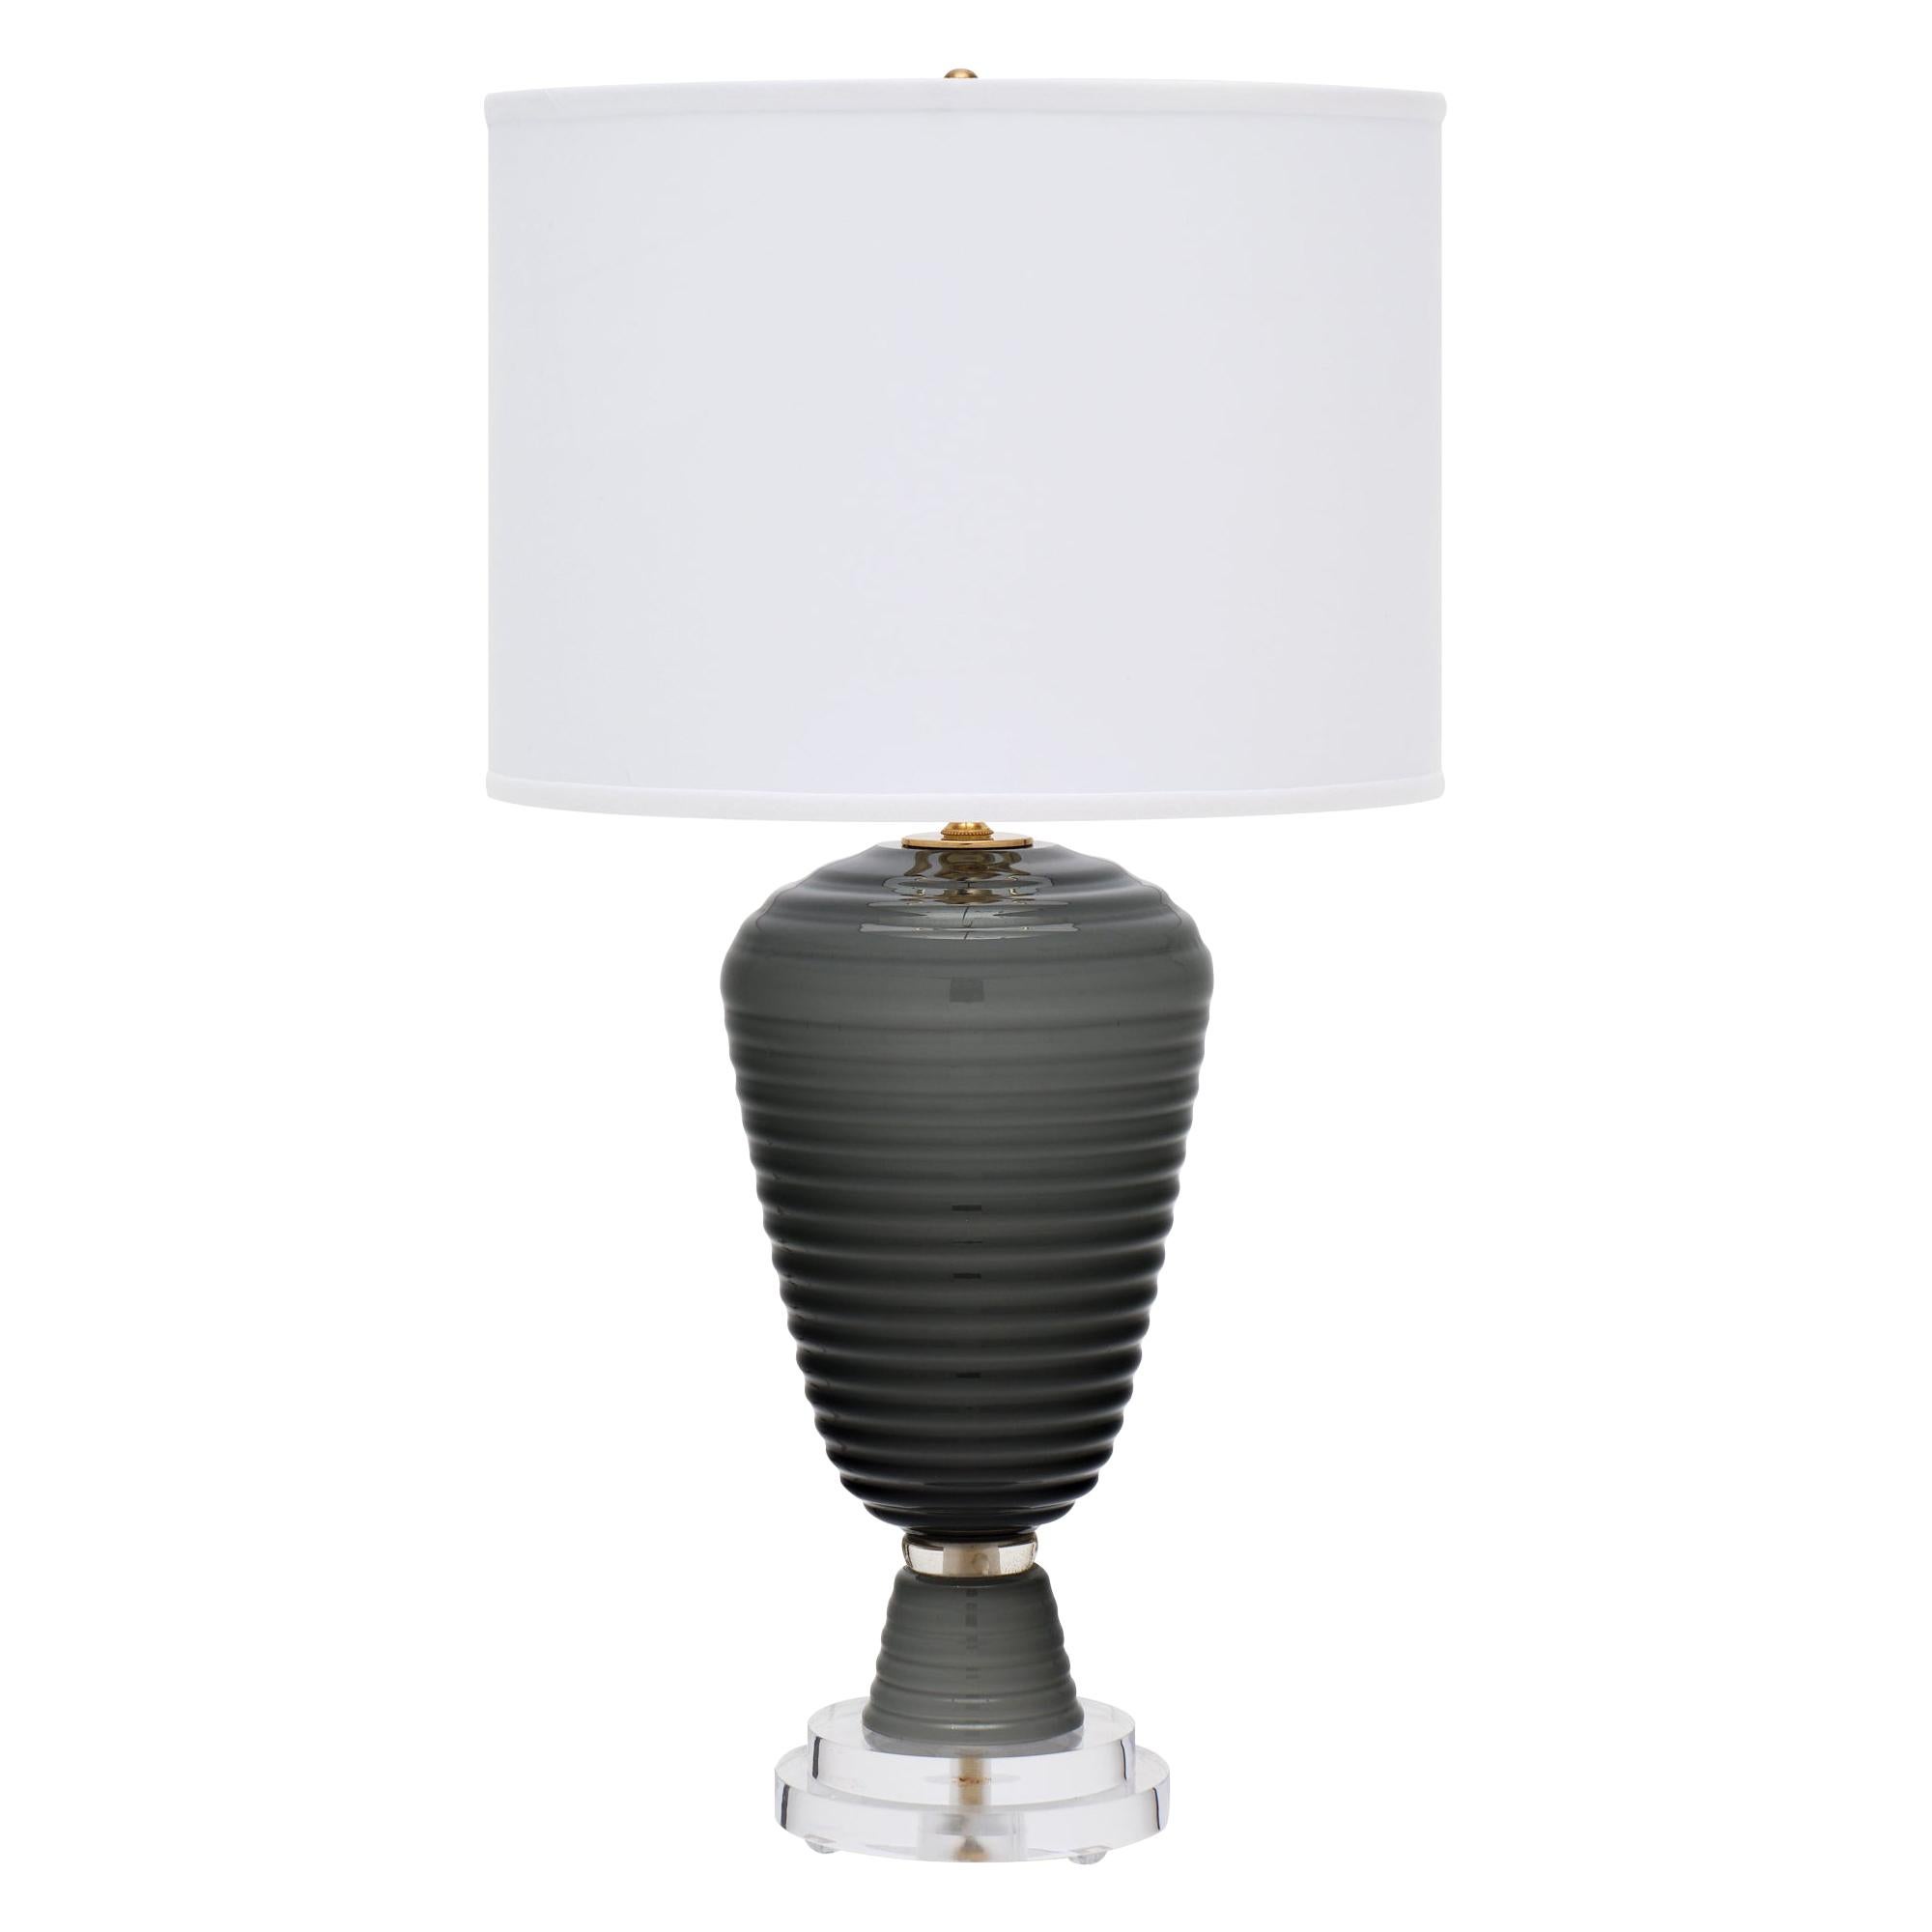 Single Murano Gray Glass Lamp